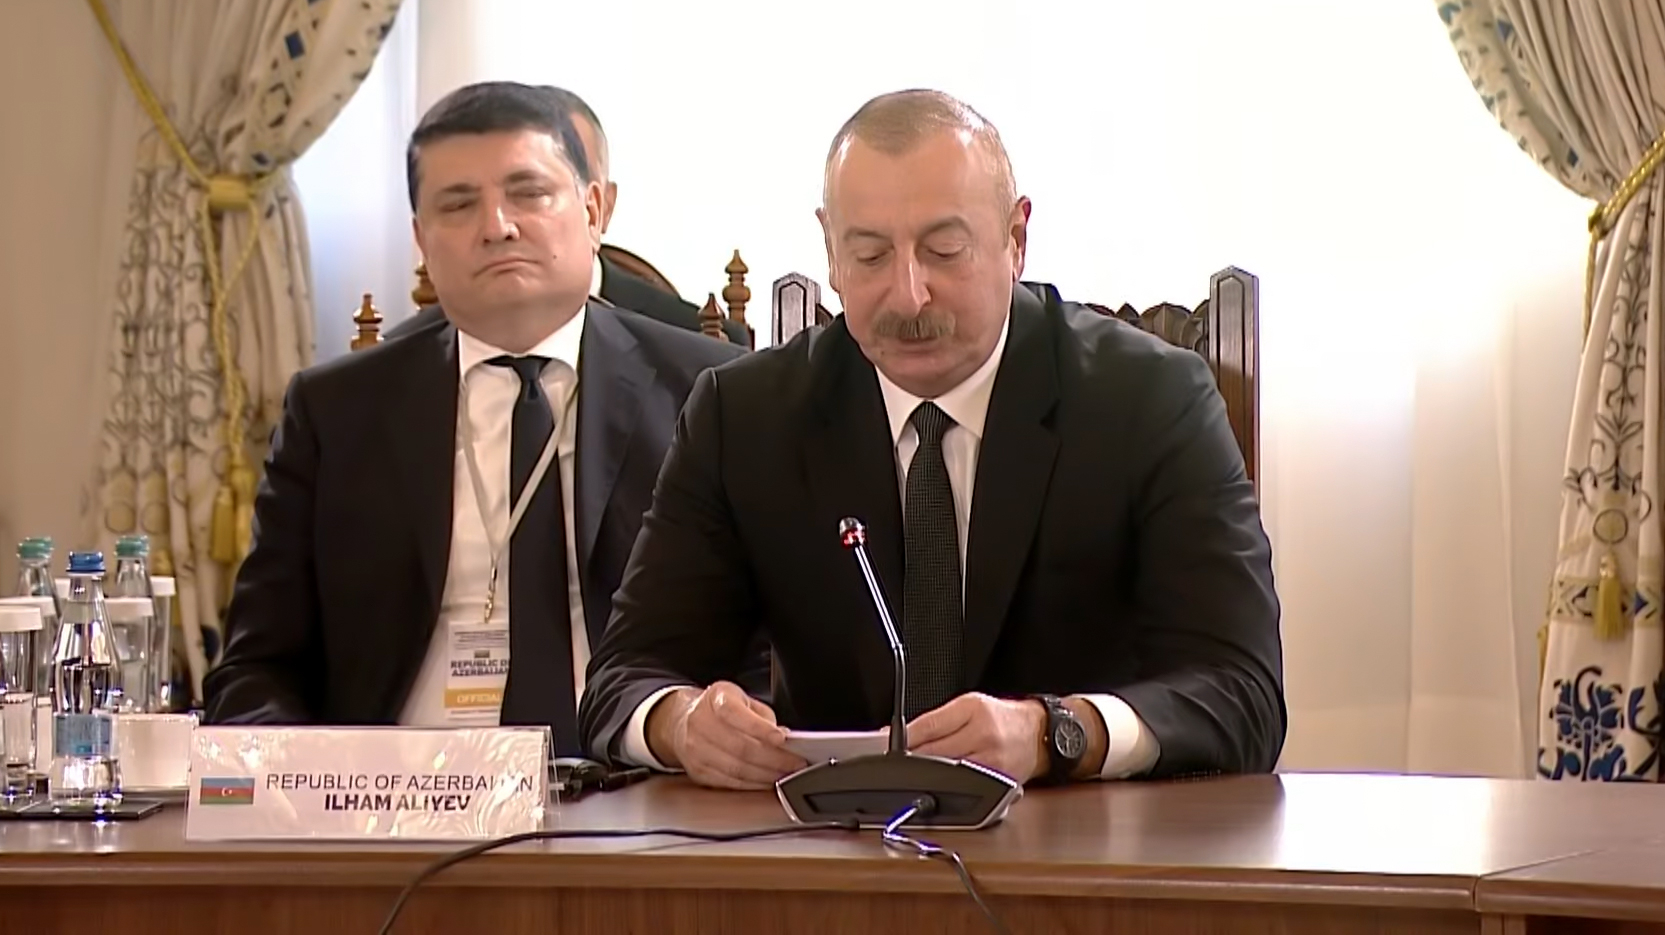 Ильхам Алиев выступил на пленарном заседании в Бухаресте - ОБНОВЛЕНО + ВИДЕО